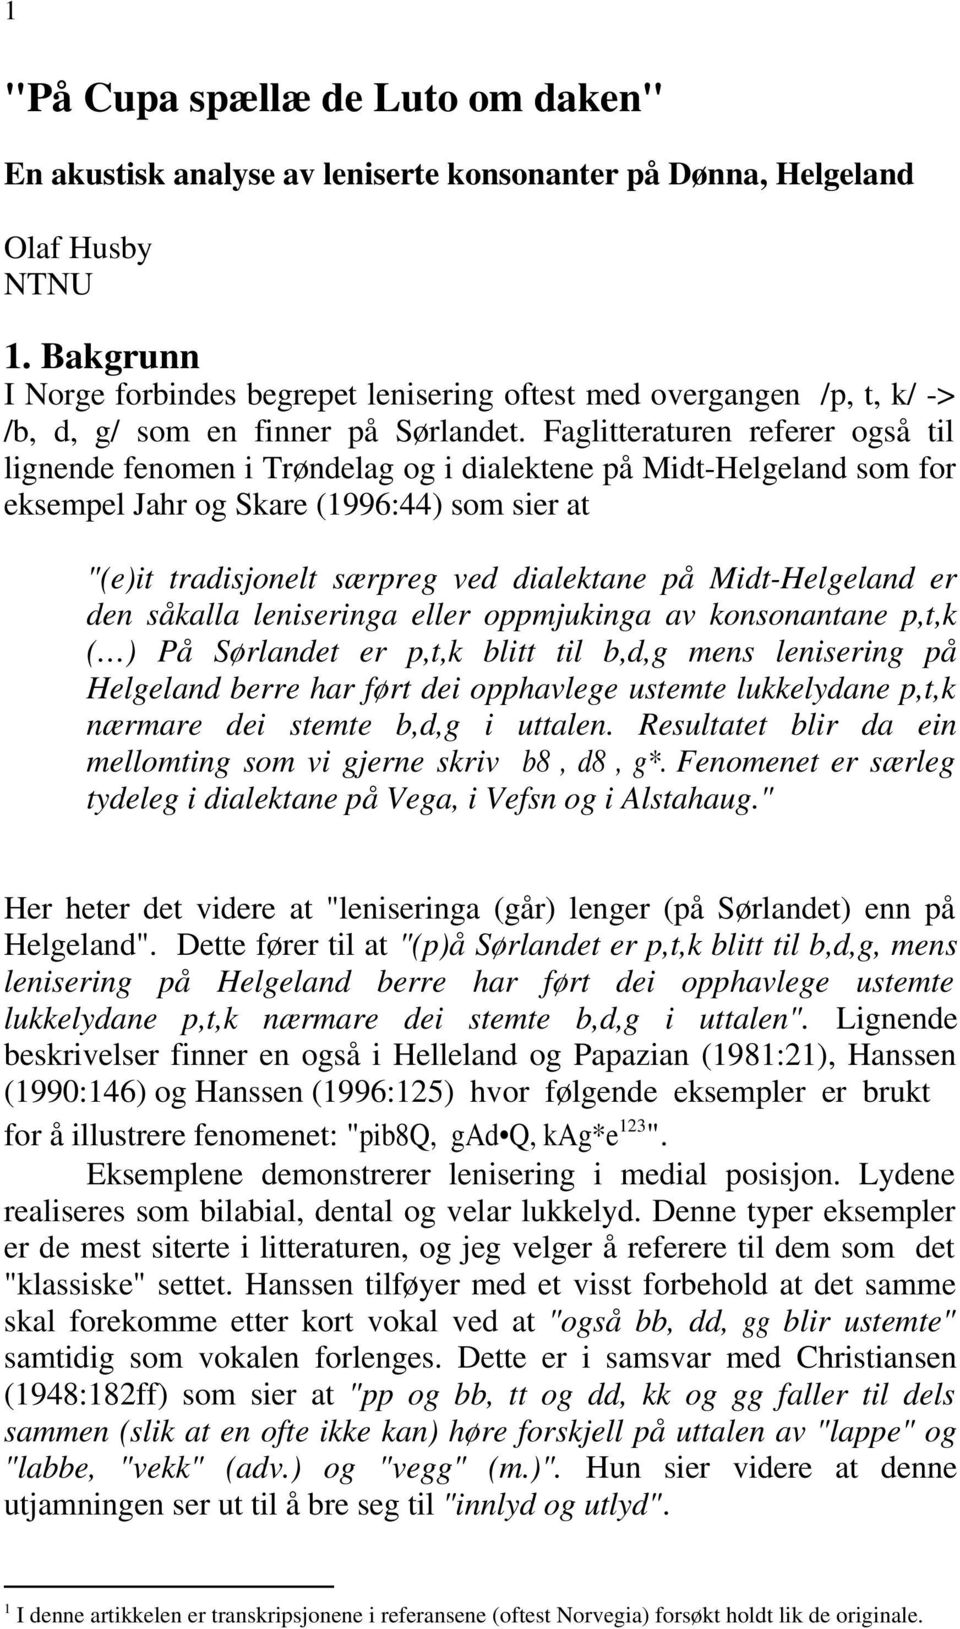 Faglitteraturen referer også til lignende fenomen i Trøndelag og i dialektene på Midt-Helgeland som for eksempel Jahr og Skare (1996:44) som sier at "(e)it tradisjonelt særpreg ved dialektane på